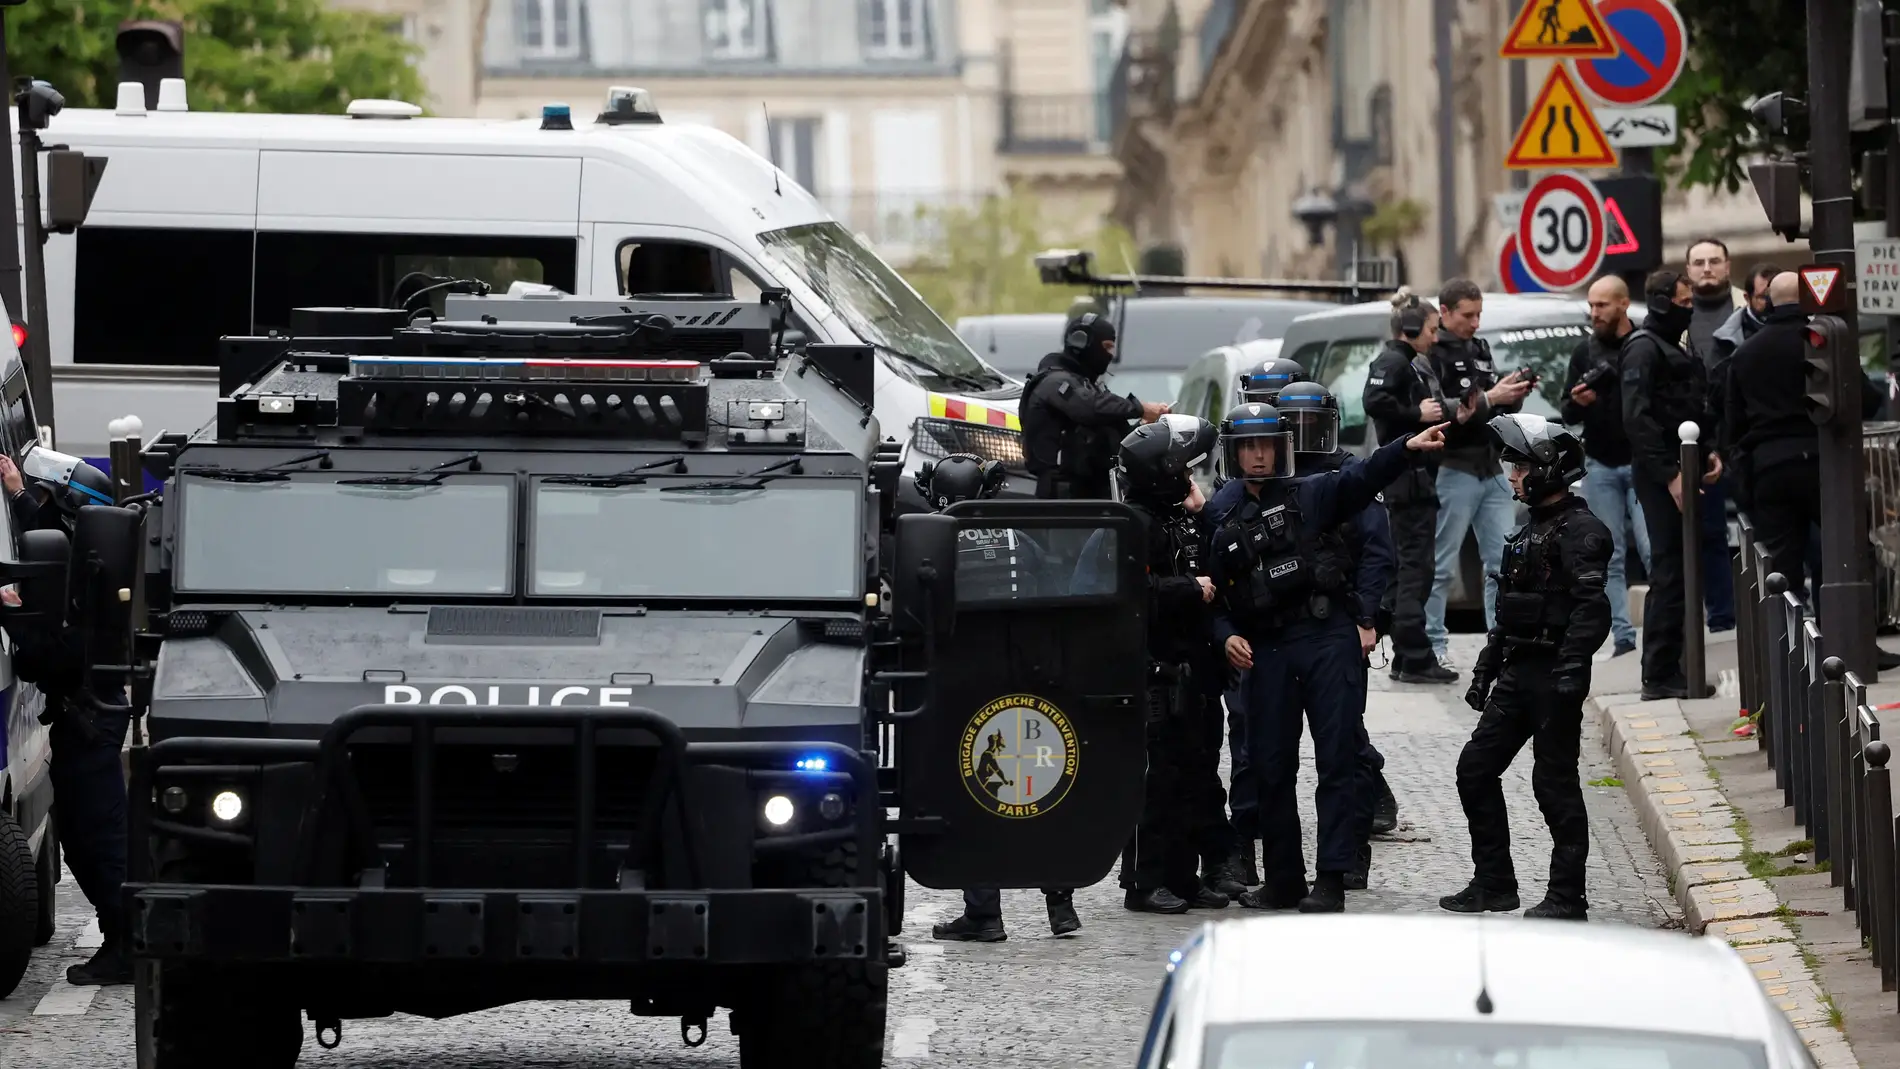 Las fuerzas de seguridad aseguran el área en torno a la embajada iraní de París/ Reuters